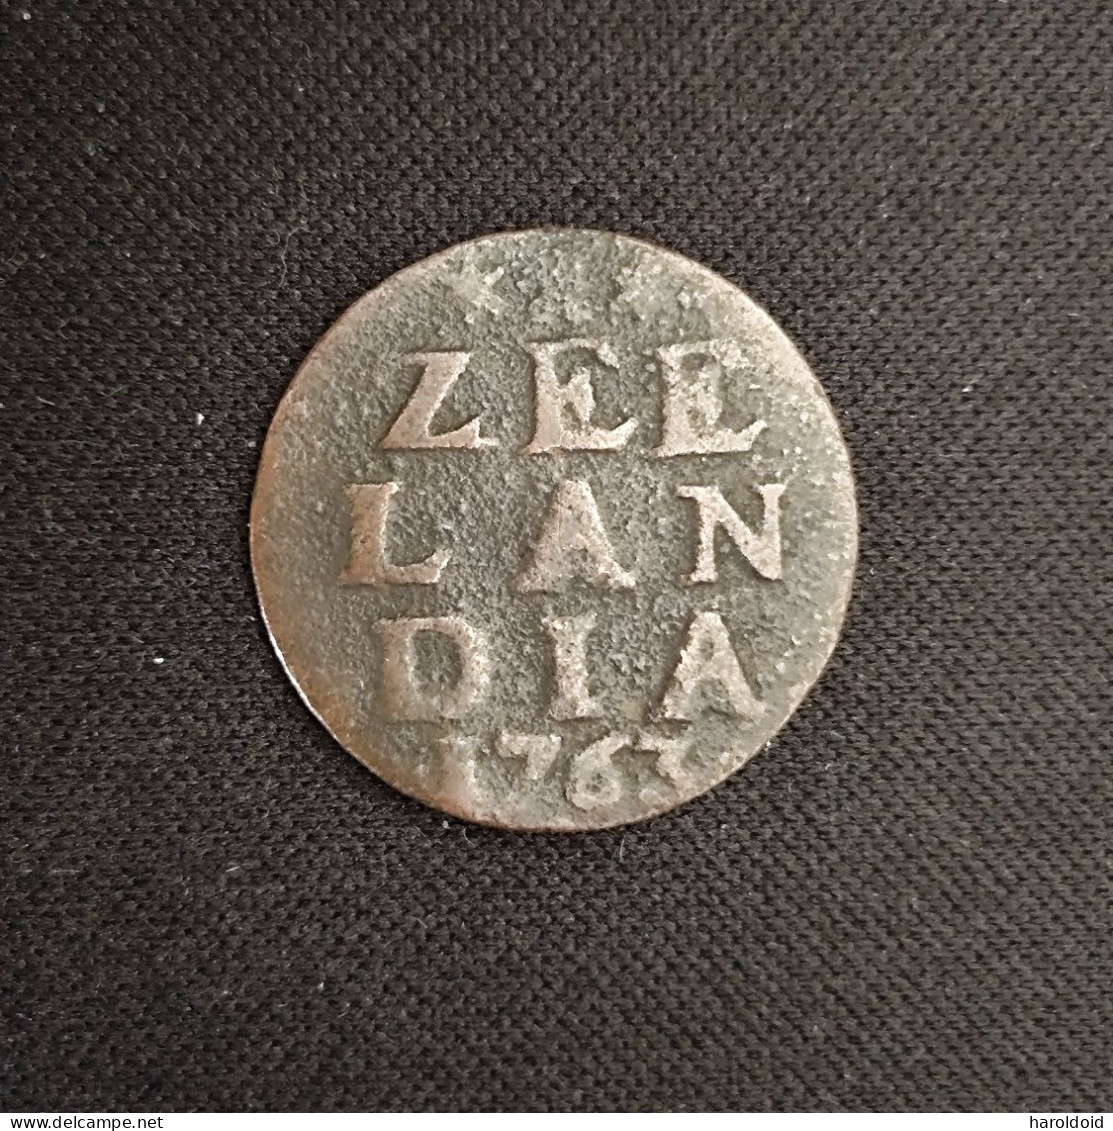 PAYS BAS - ZEELAND - 1/2 DUIT 1763 - …-1795 : Former Period